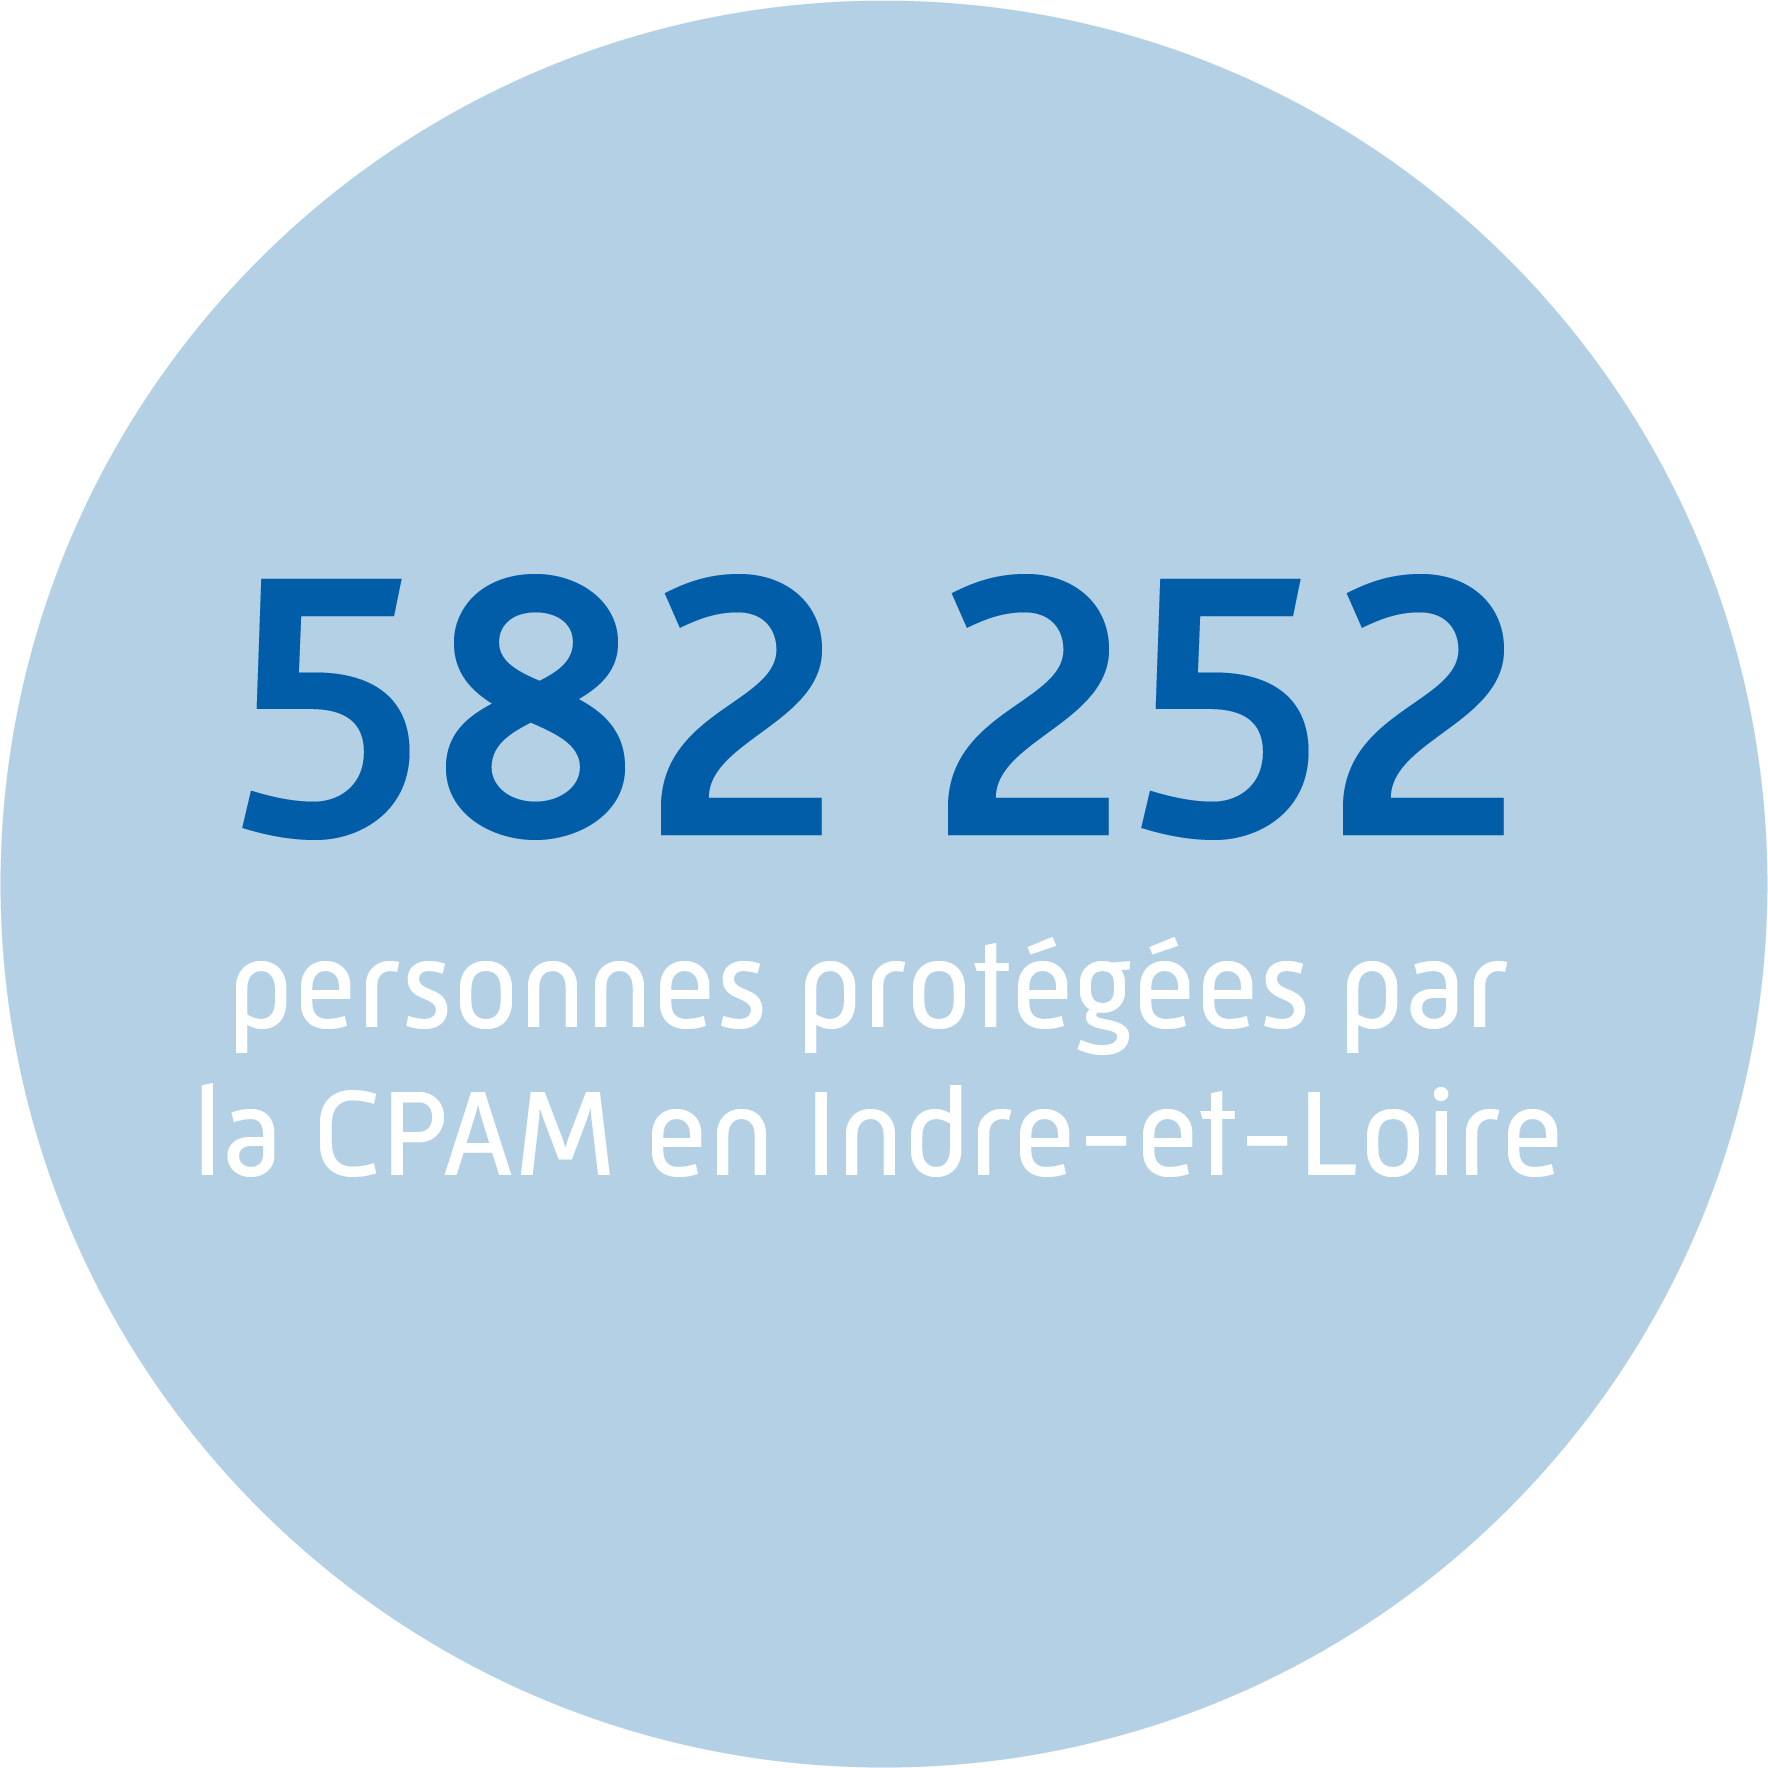 Plus de 63 millions de bénéficiaires, soit plus de 94% de la population française.